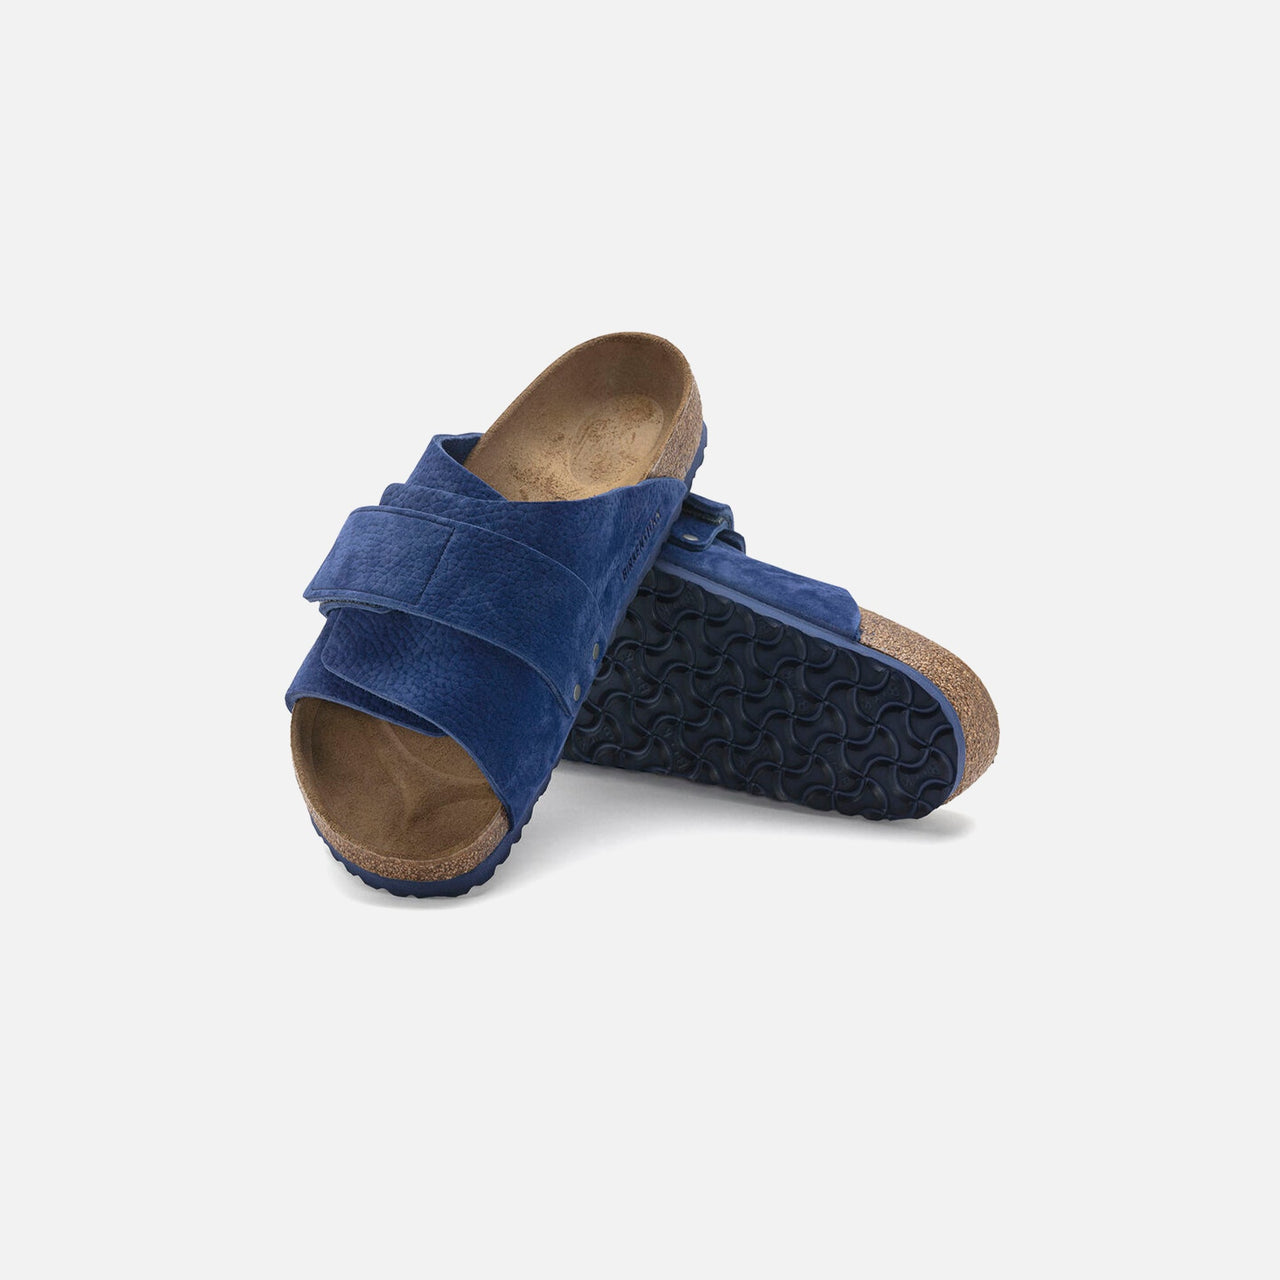 Elegant and versatile Birkenstock Kyoto Suede Ultra Blue sandal for all-day comfort